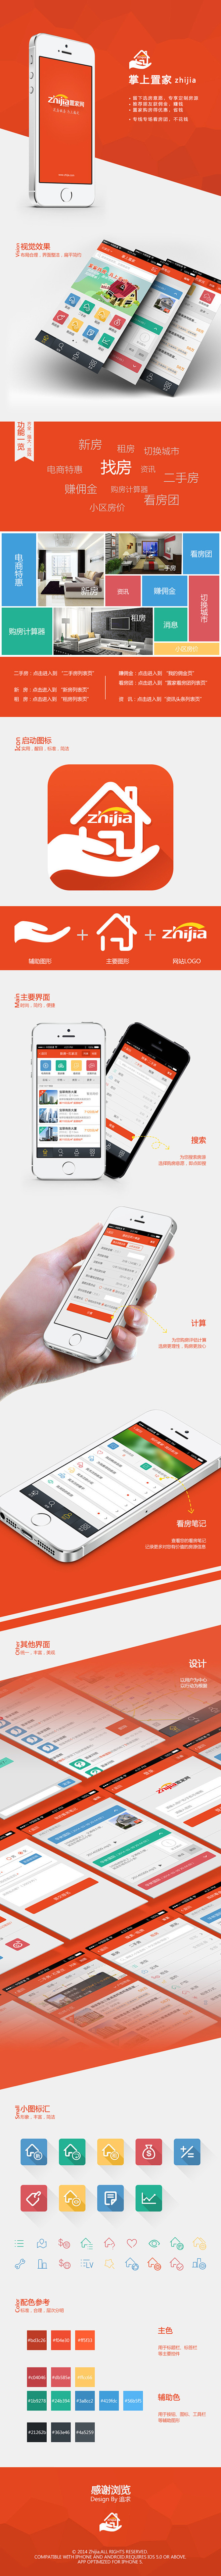 置家找房-手机App界面展示-UI中国-...